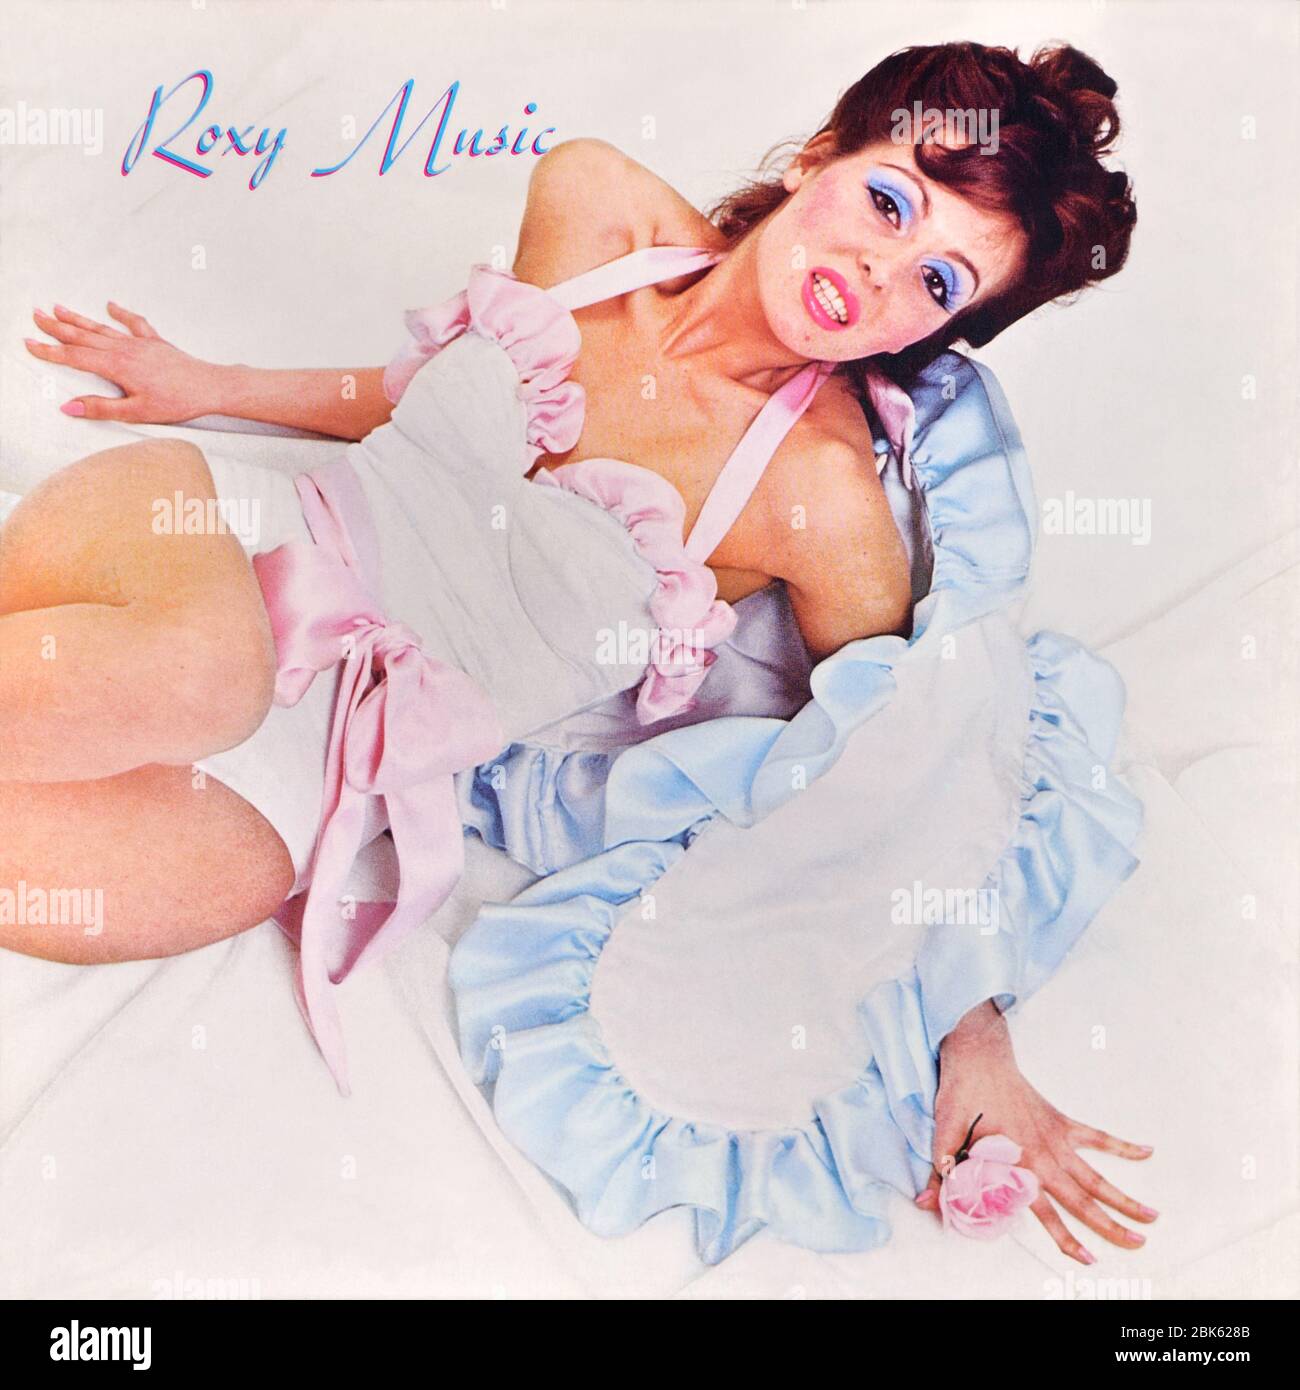 Roxy Music - copertina originale in vinile - Roxy Music - 1972 Foto Stock